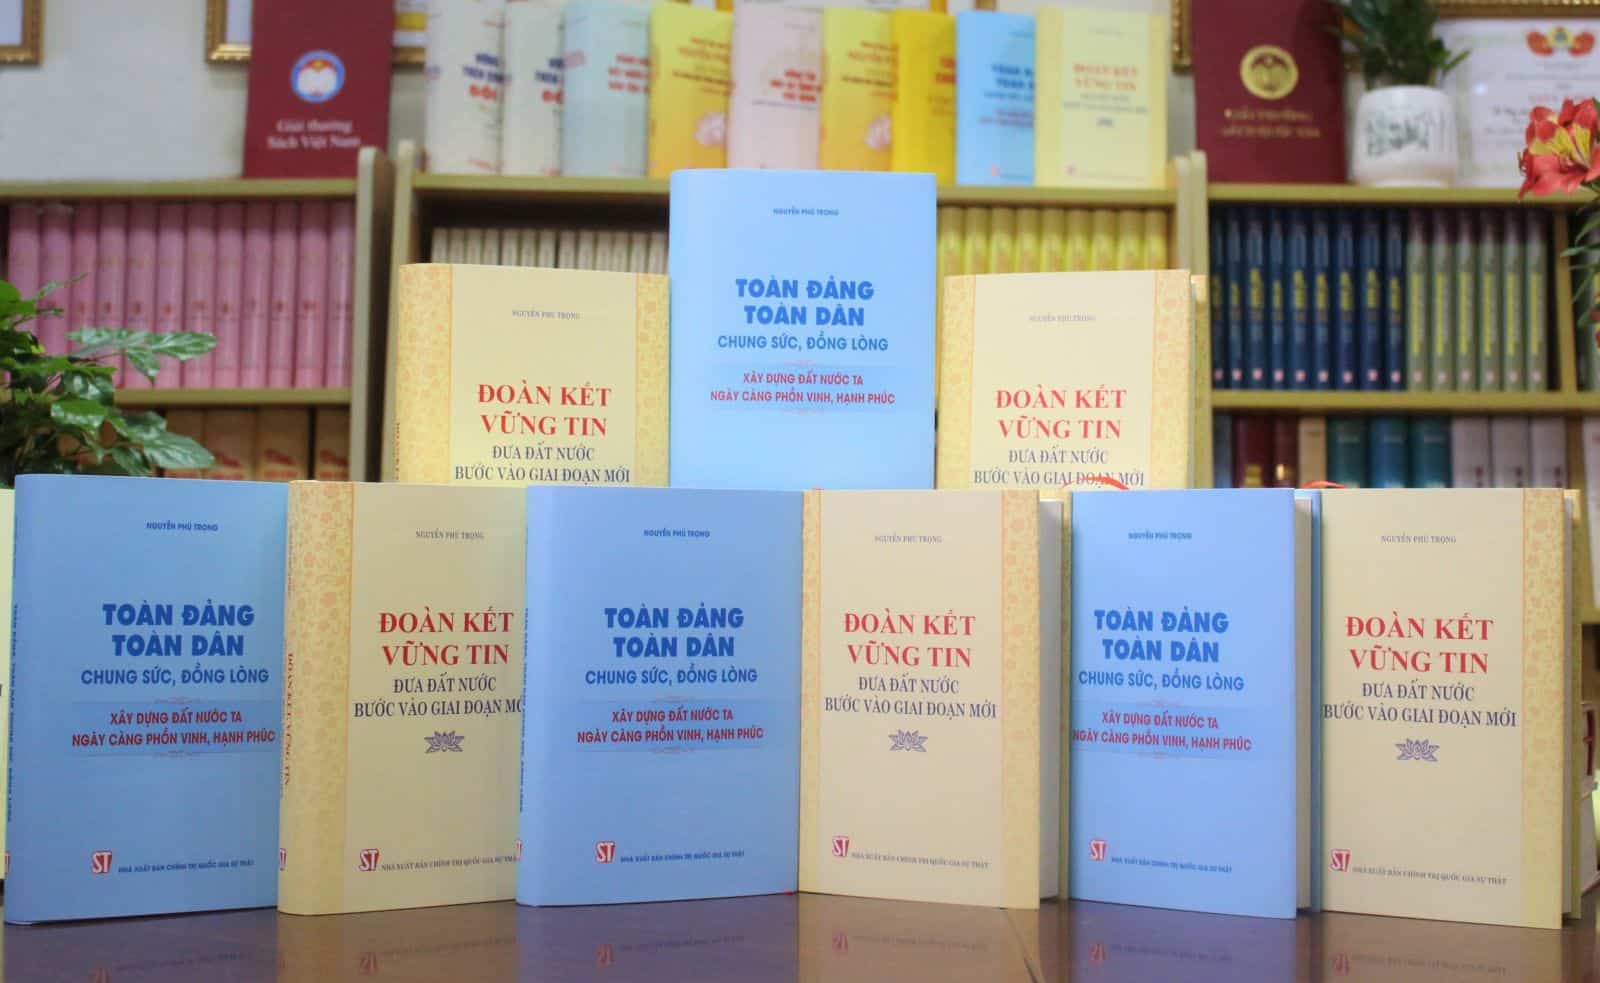 Xuất bản hai cuốn sách giàu tính lý luận và thực tiễn của Tổng Bí thư Nguyễn Phú Trọng